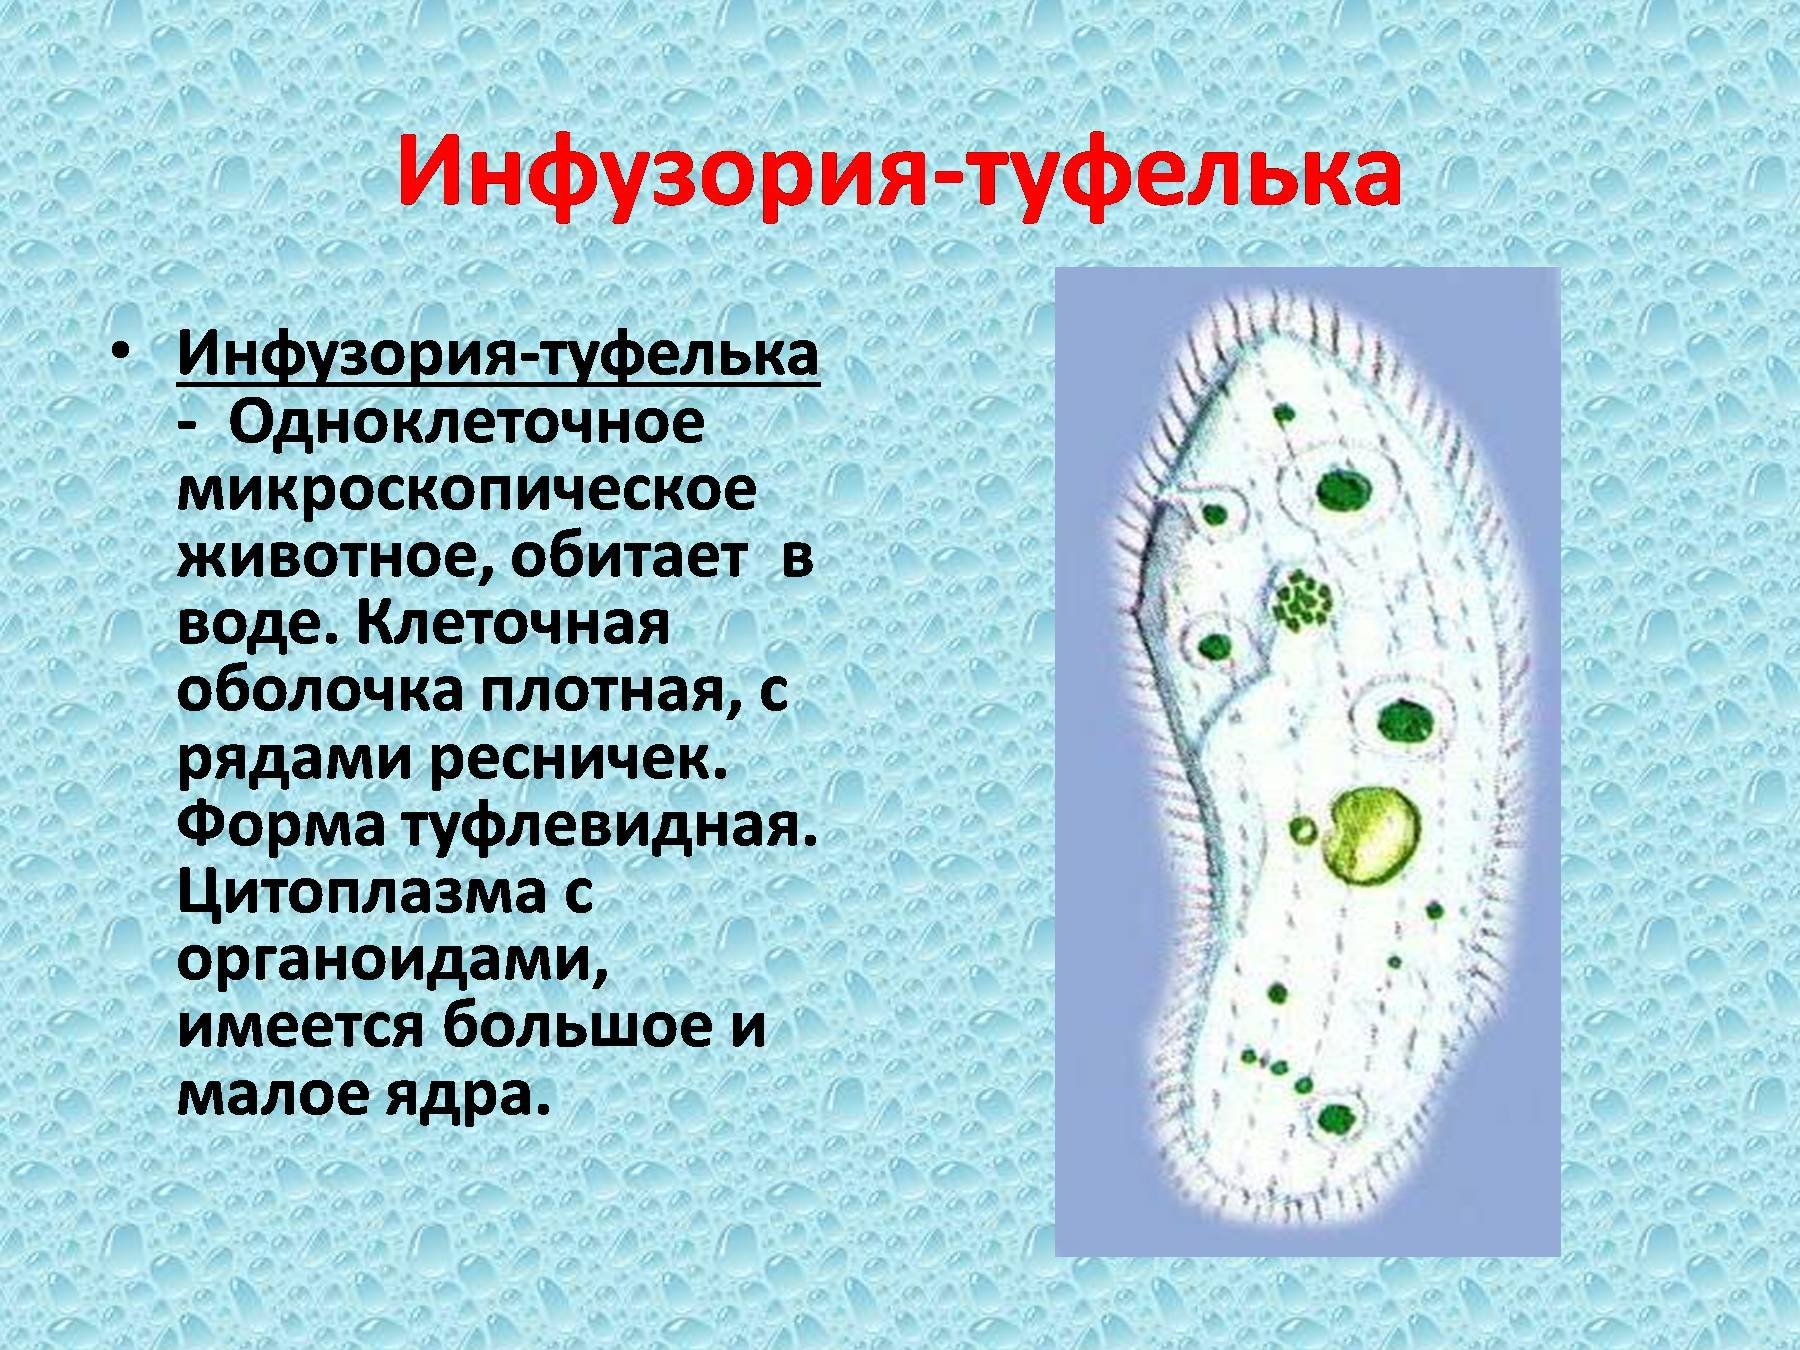 Жизнедеятельности инфузории туфельки. Микронуклеус у инфузорий. Инфузория туфелька цитоплазма. Инфузория туфелька форма тела 7 класс. Инфузория туфелька макронуклеус.